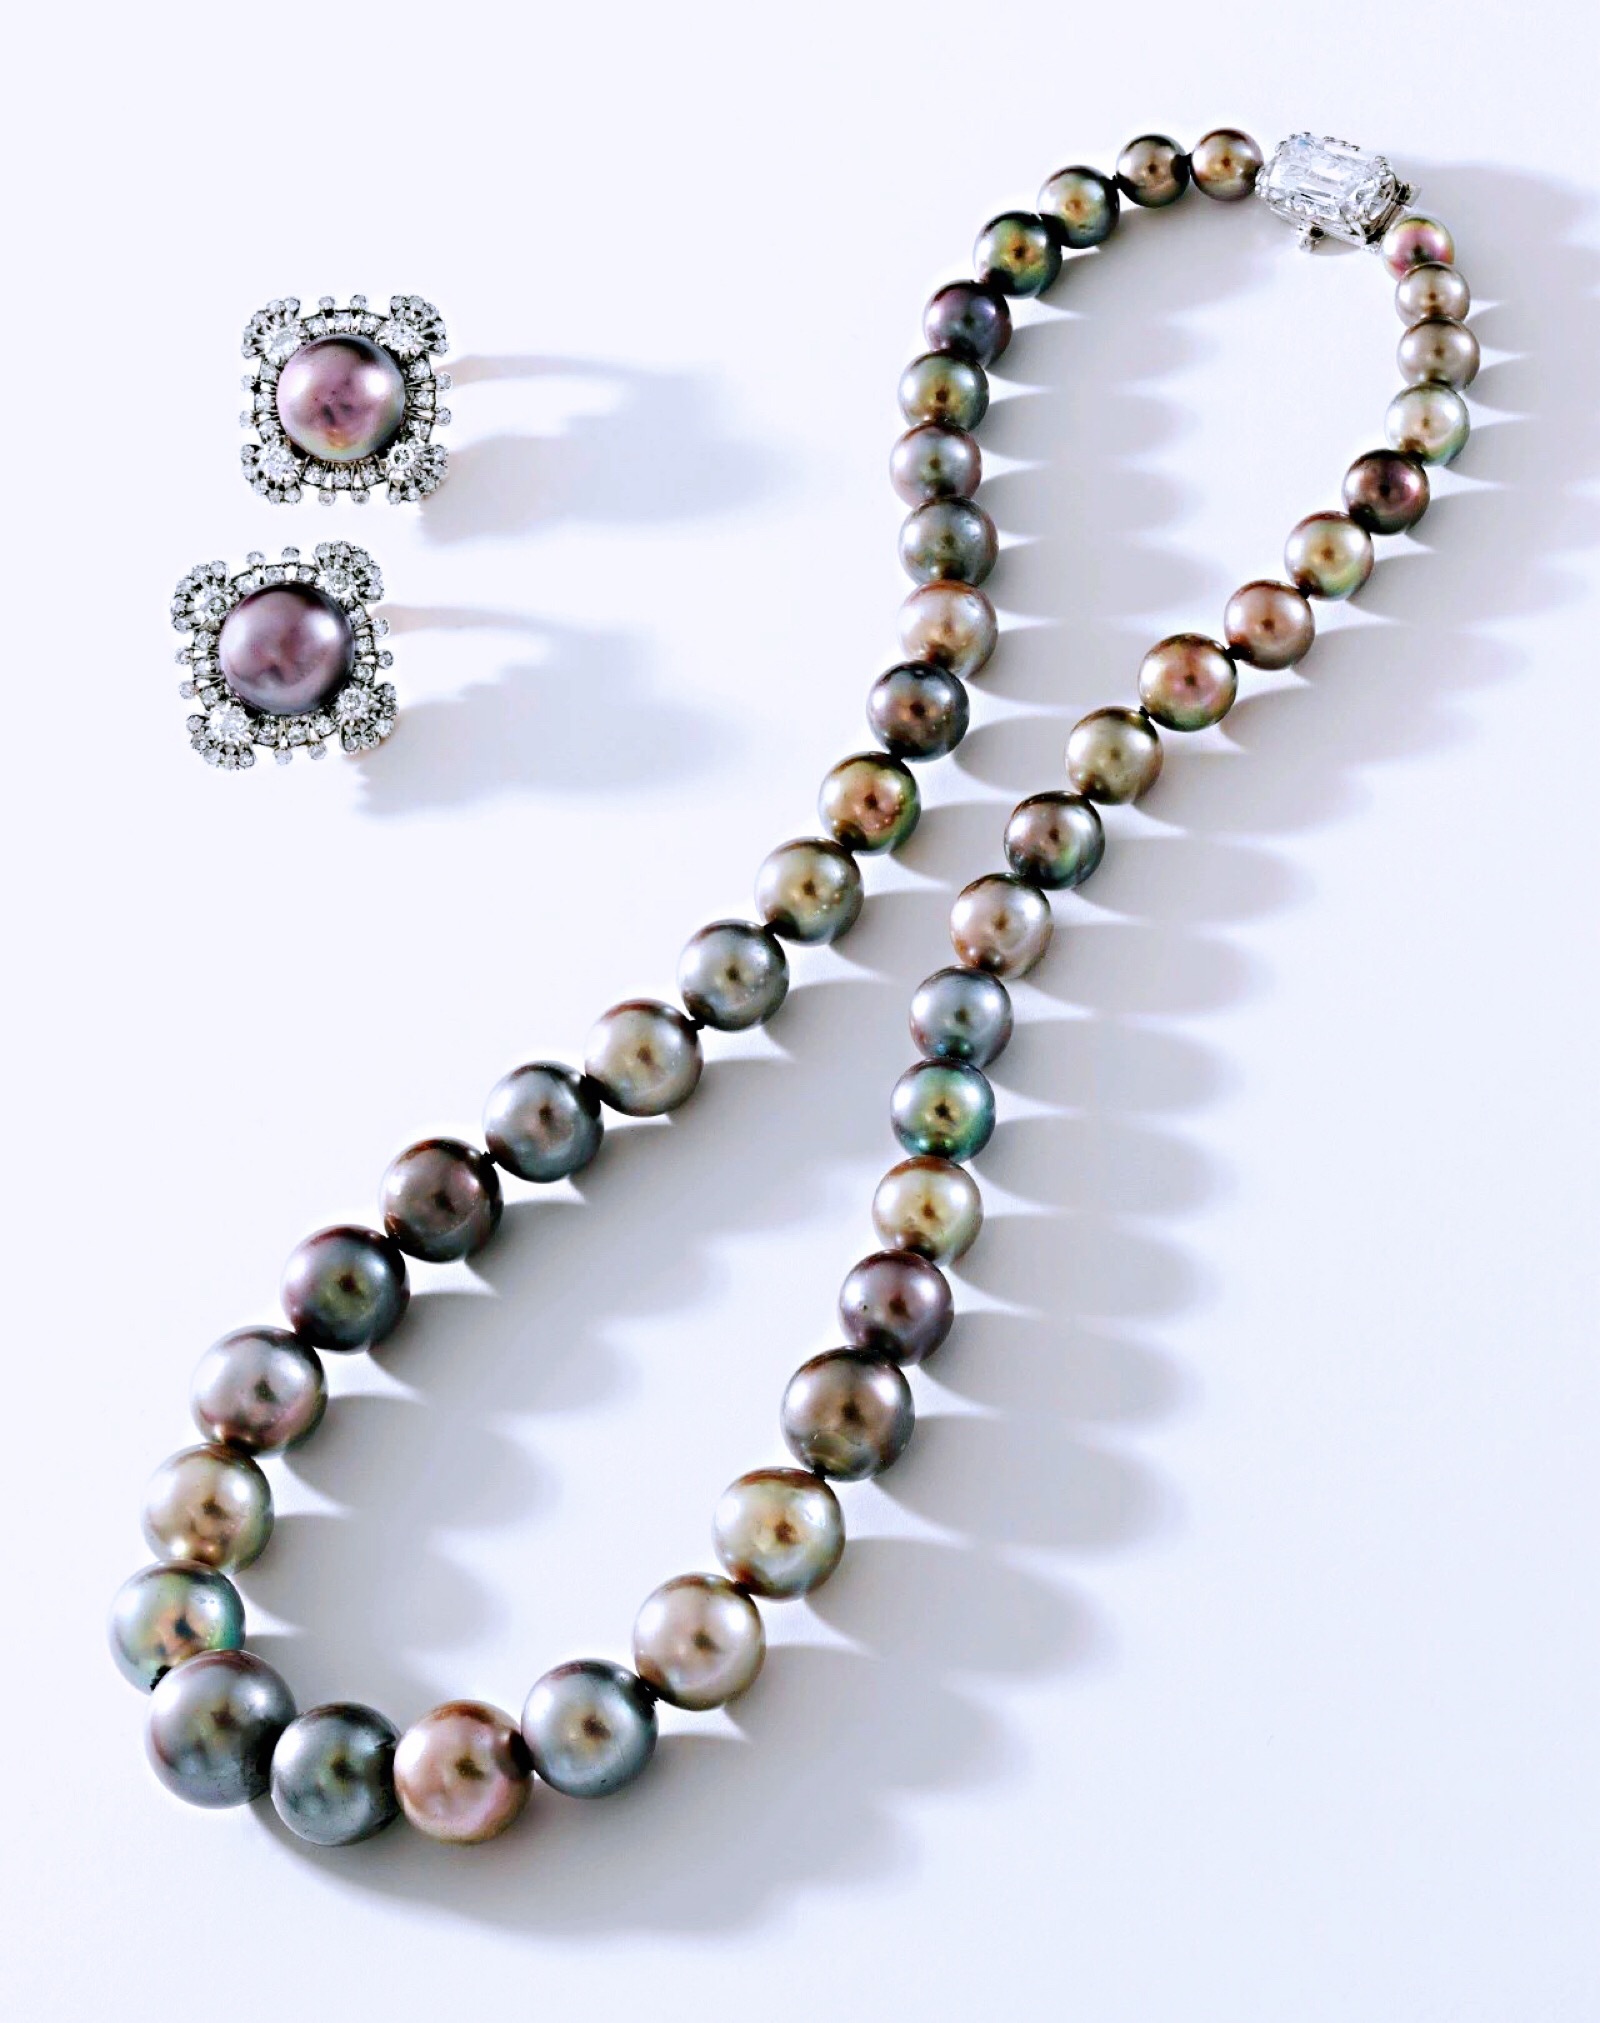 天然珍珠配钻石项链卡地亚伦敦(cartier london)及天然珍珠配钻石耳环